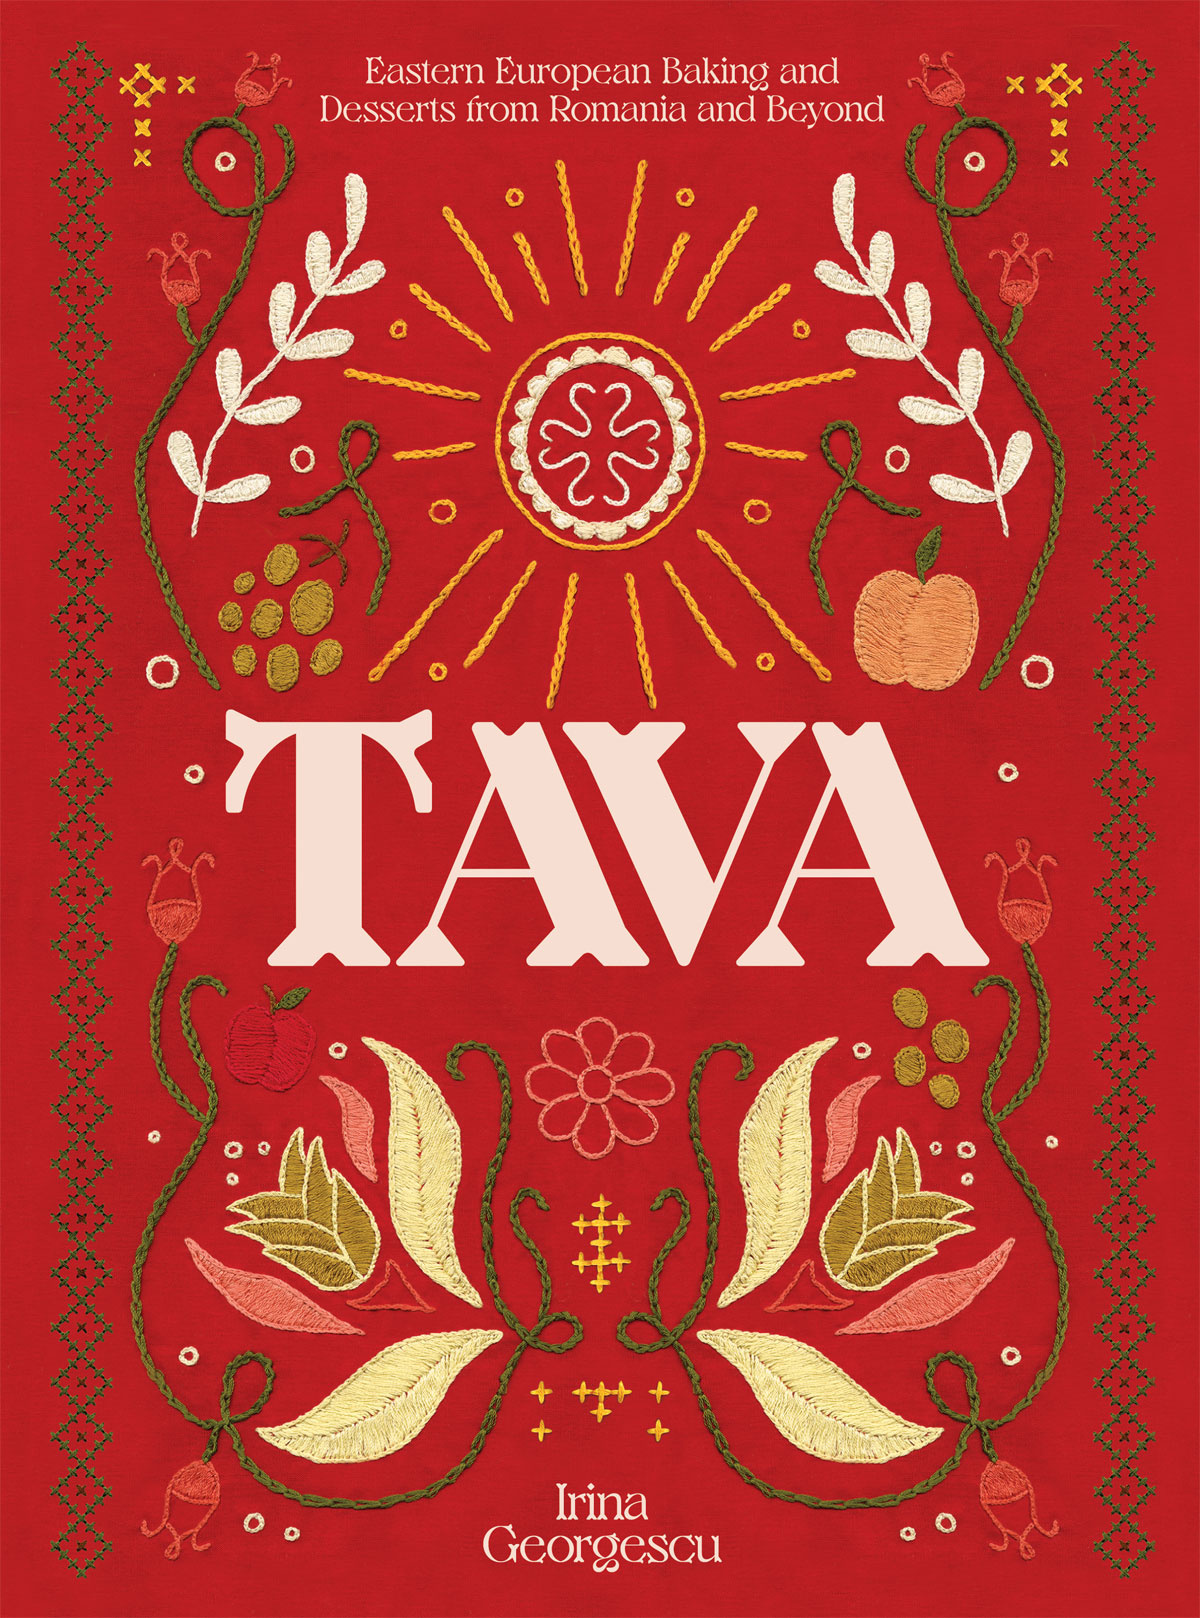 Book cover of Tava by Irina Georgescu